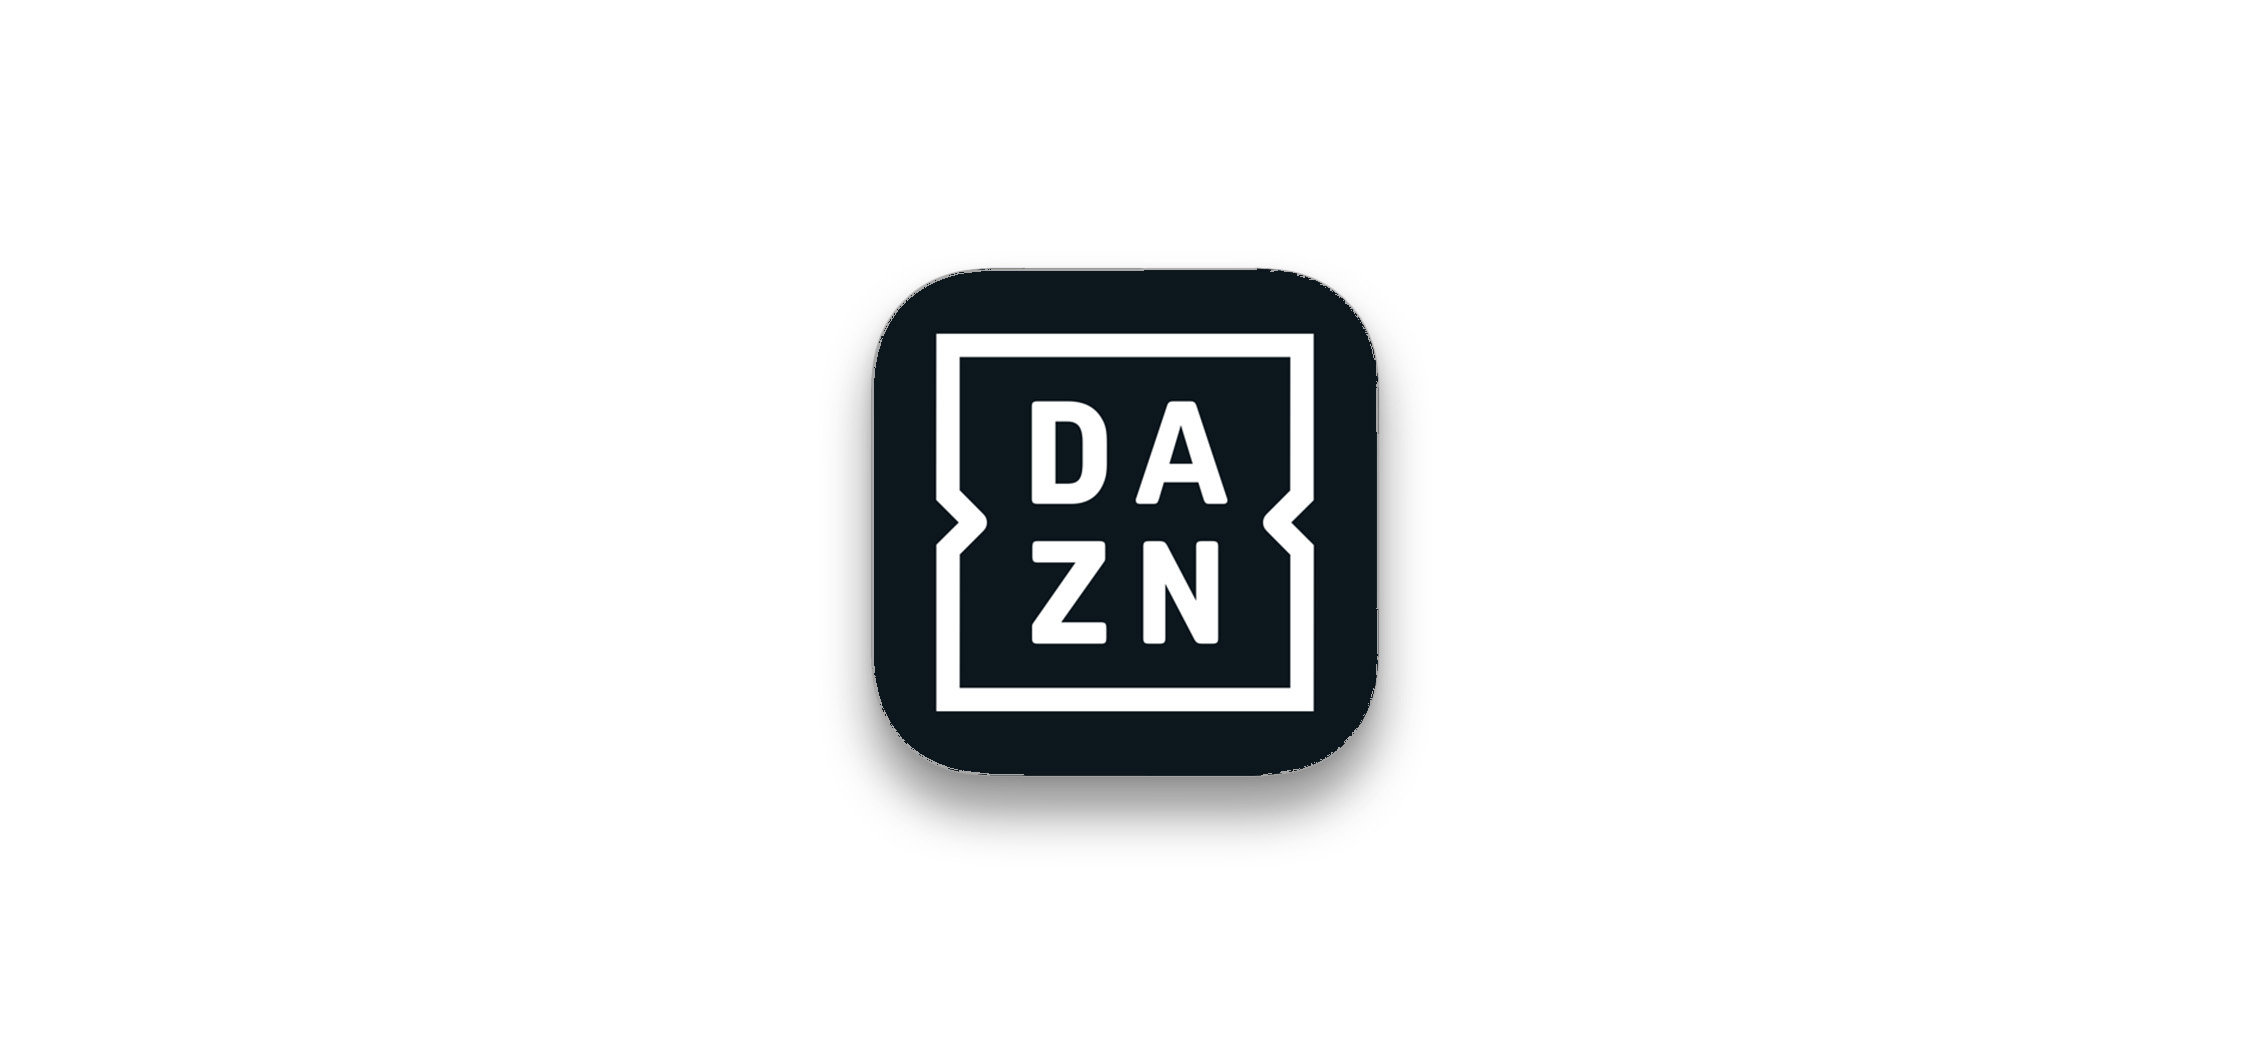 D.a.Z.n Total Spain 7 Month Warranty